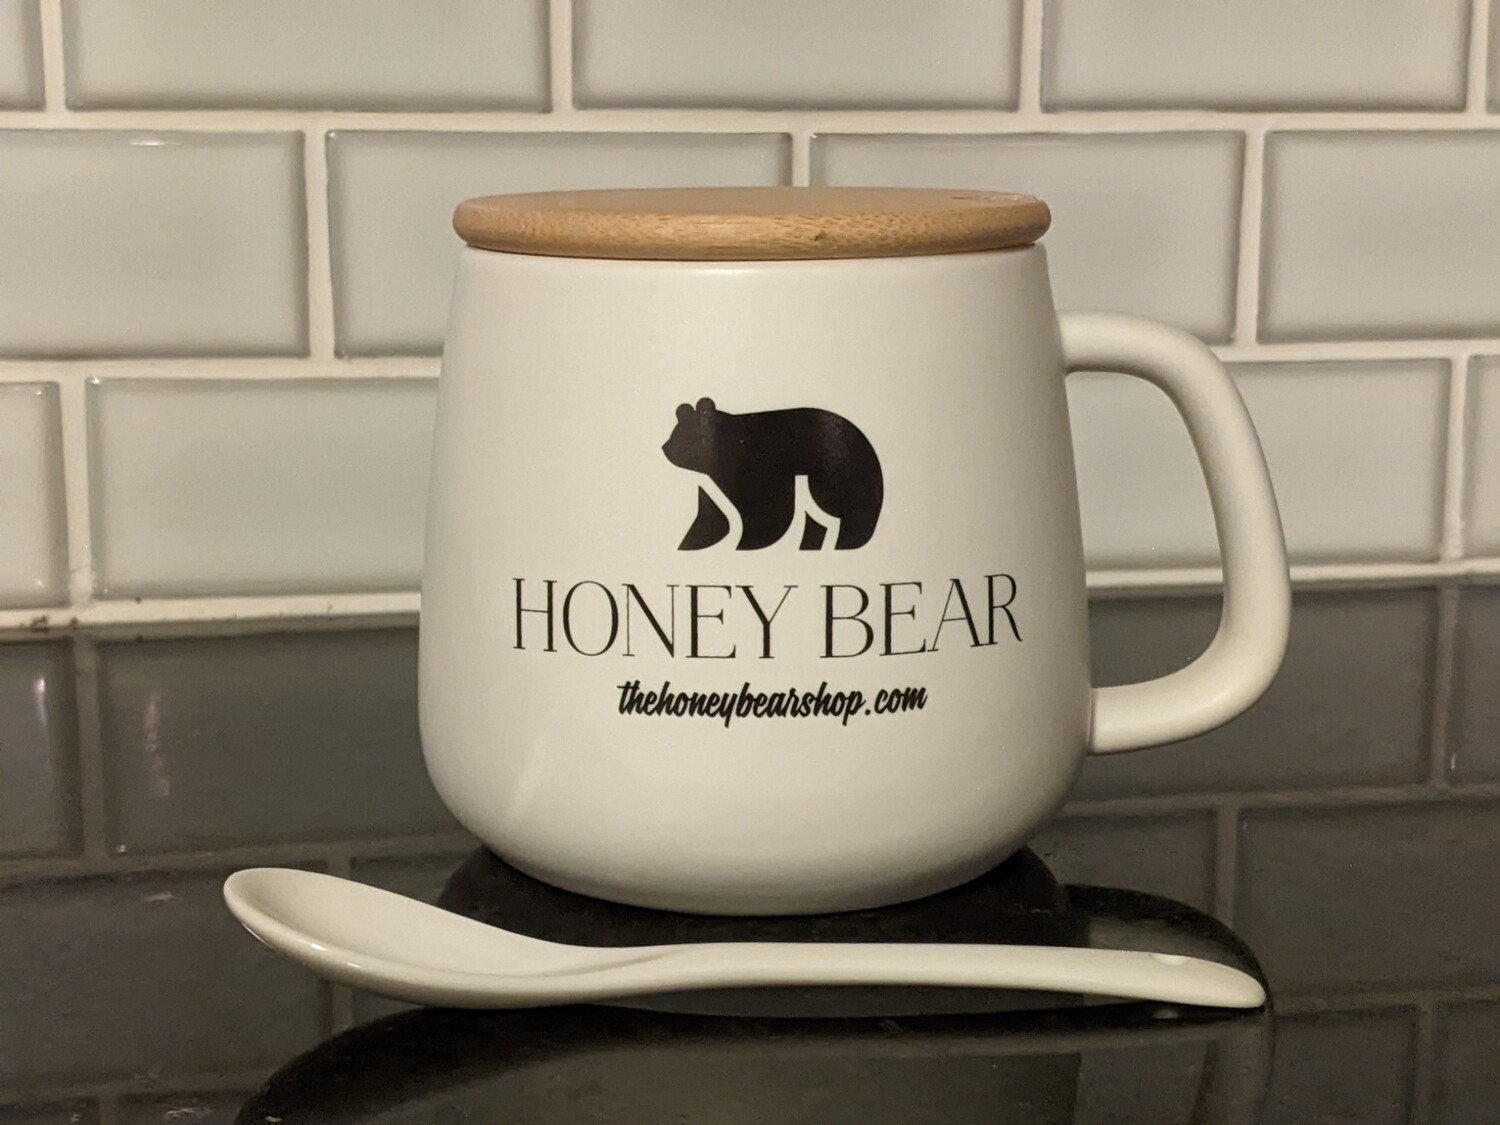 Honey Bear Mug